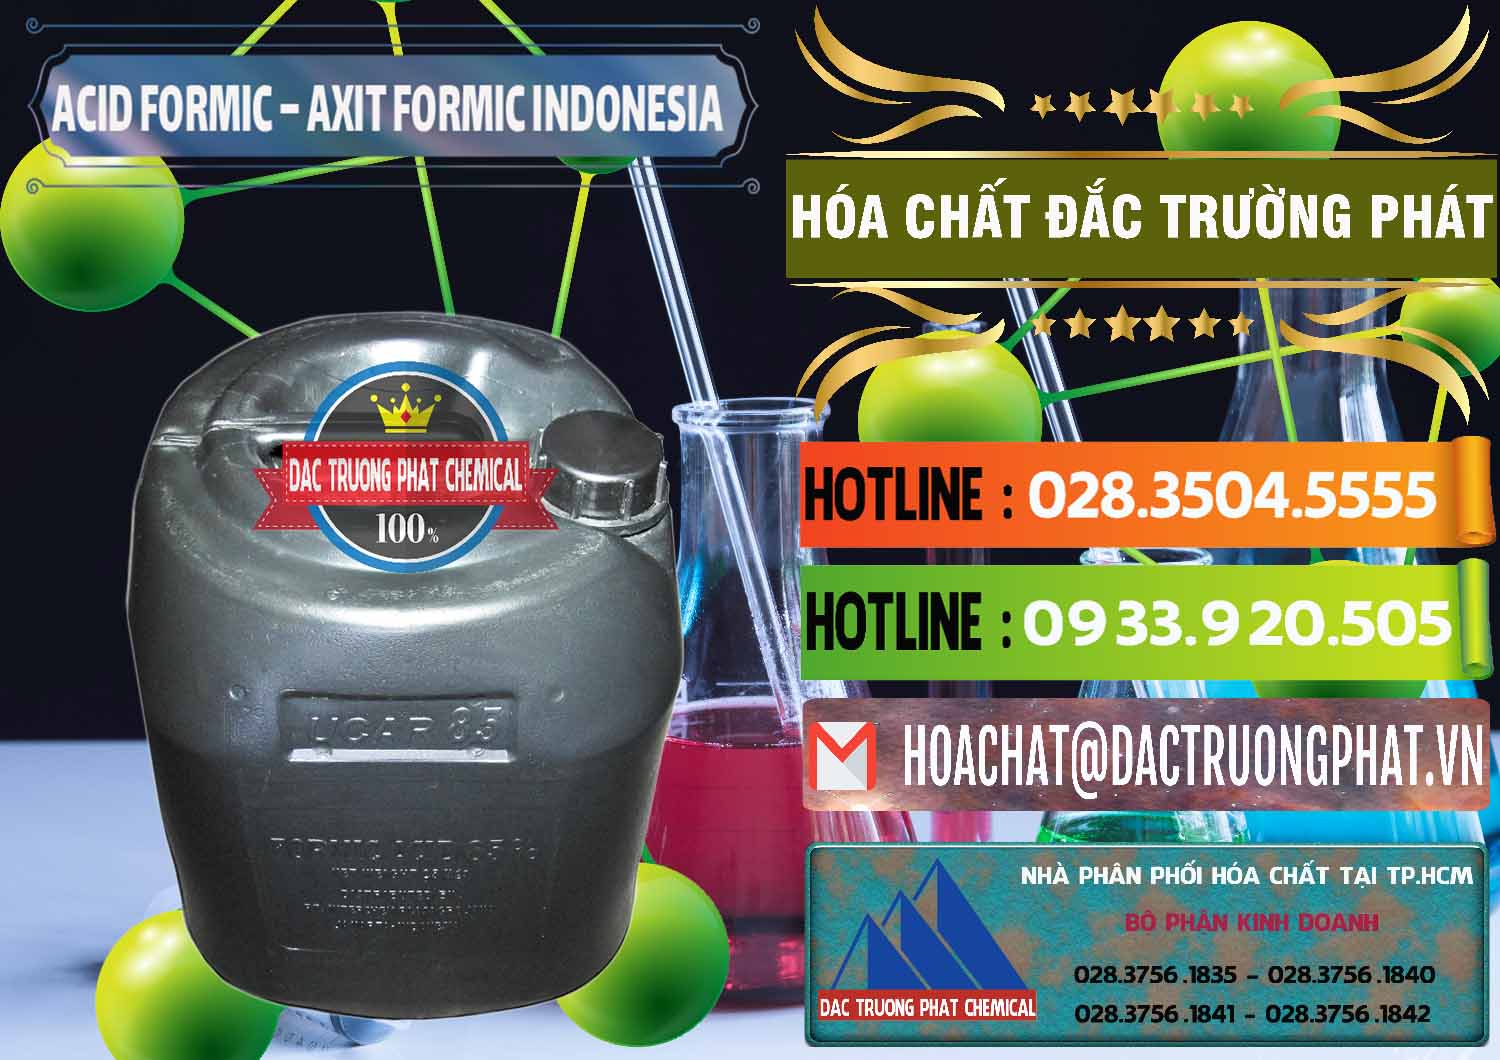 Nơi chuyên cung cấp và bán Acid Formic - Axit Formic Indonesia - 0026 - Cty chuyên cung cấp - bán hóa chất tại TP.HCM - cungcaphoachat.com.vn